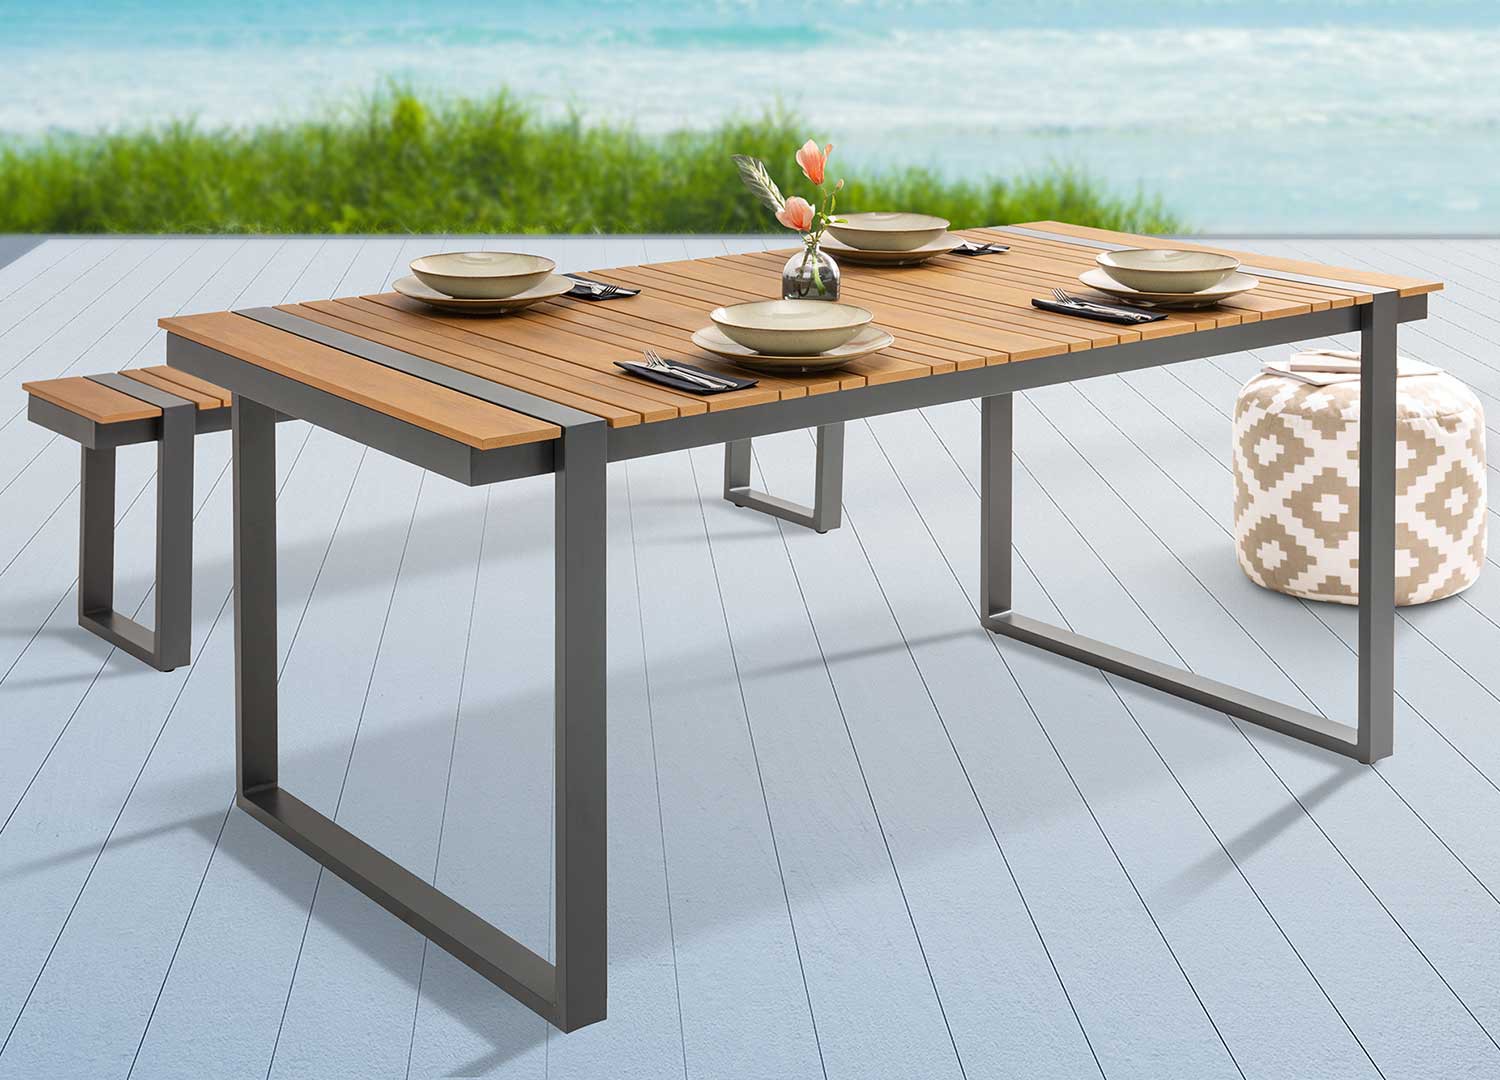 Table d'extérieur composite et aluminium 180 cm pour meuble de jardin